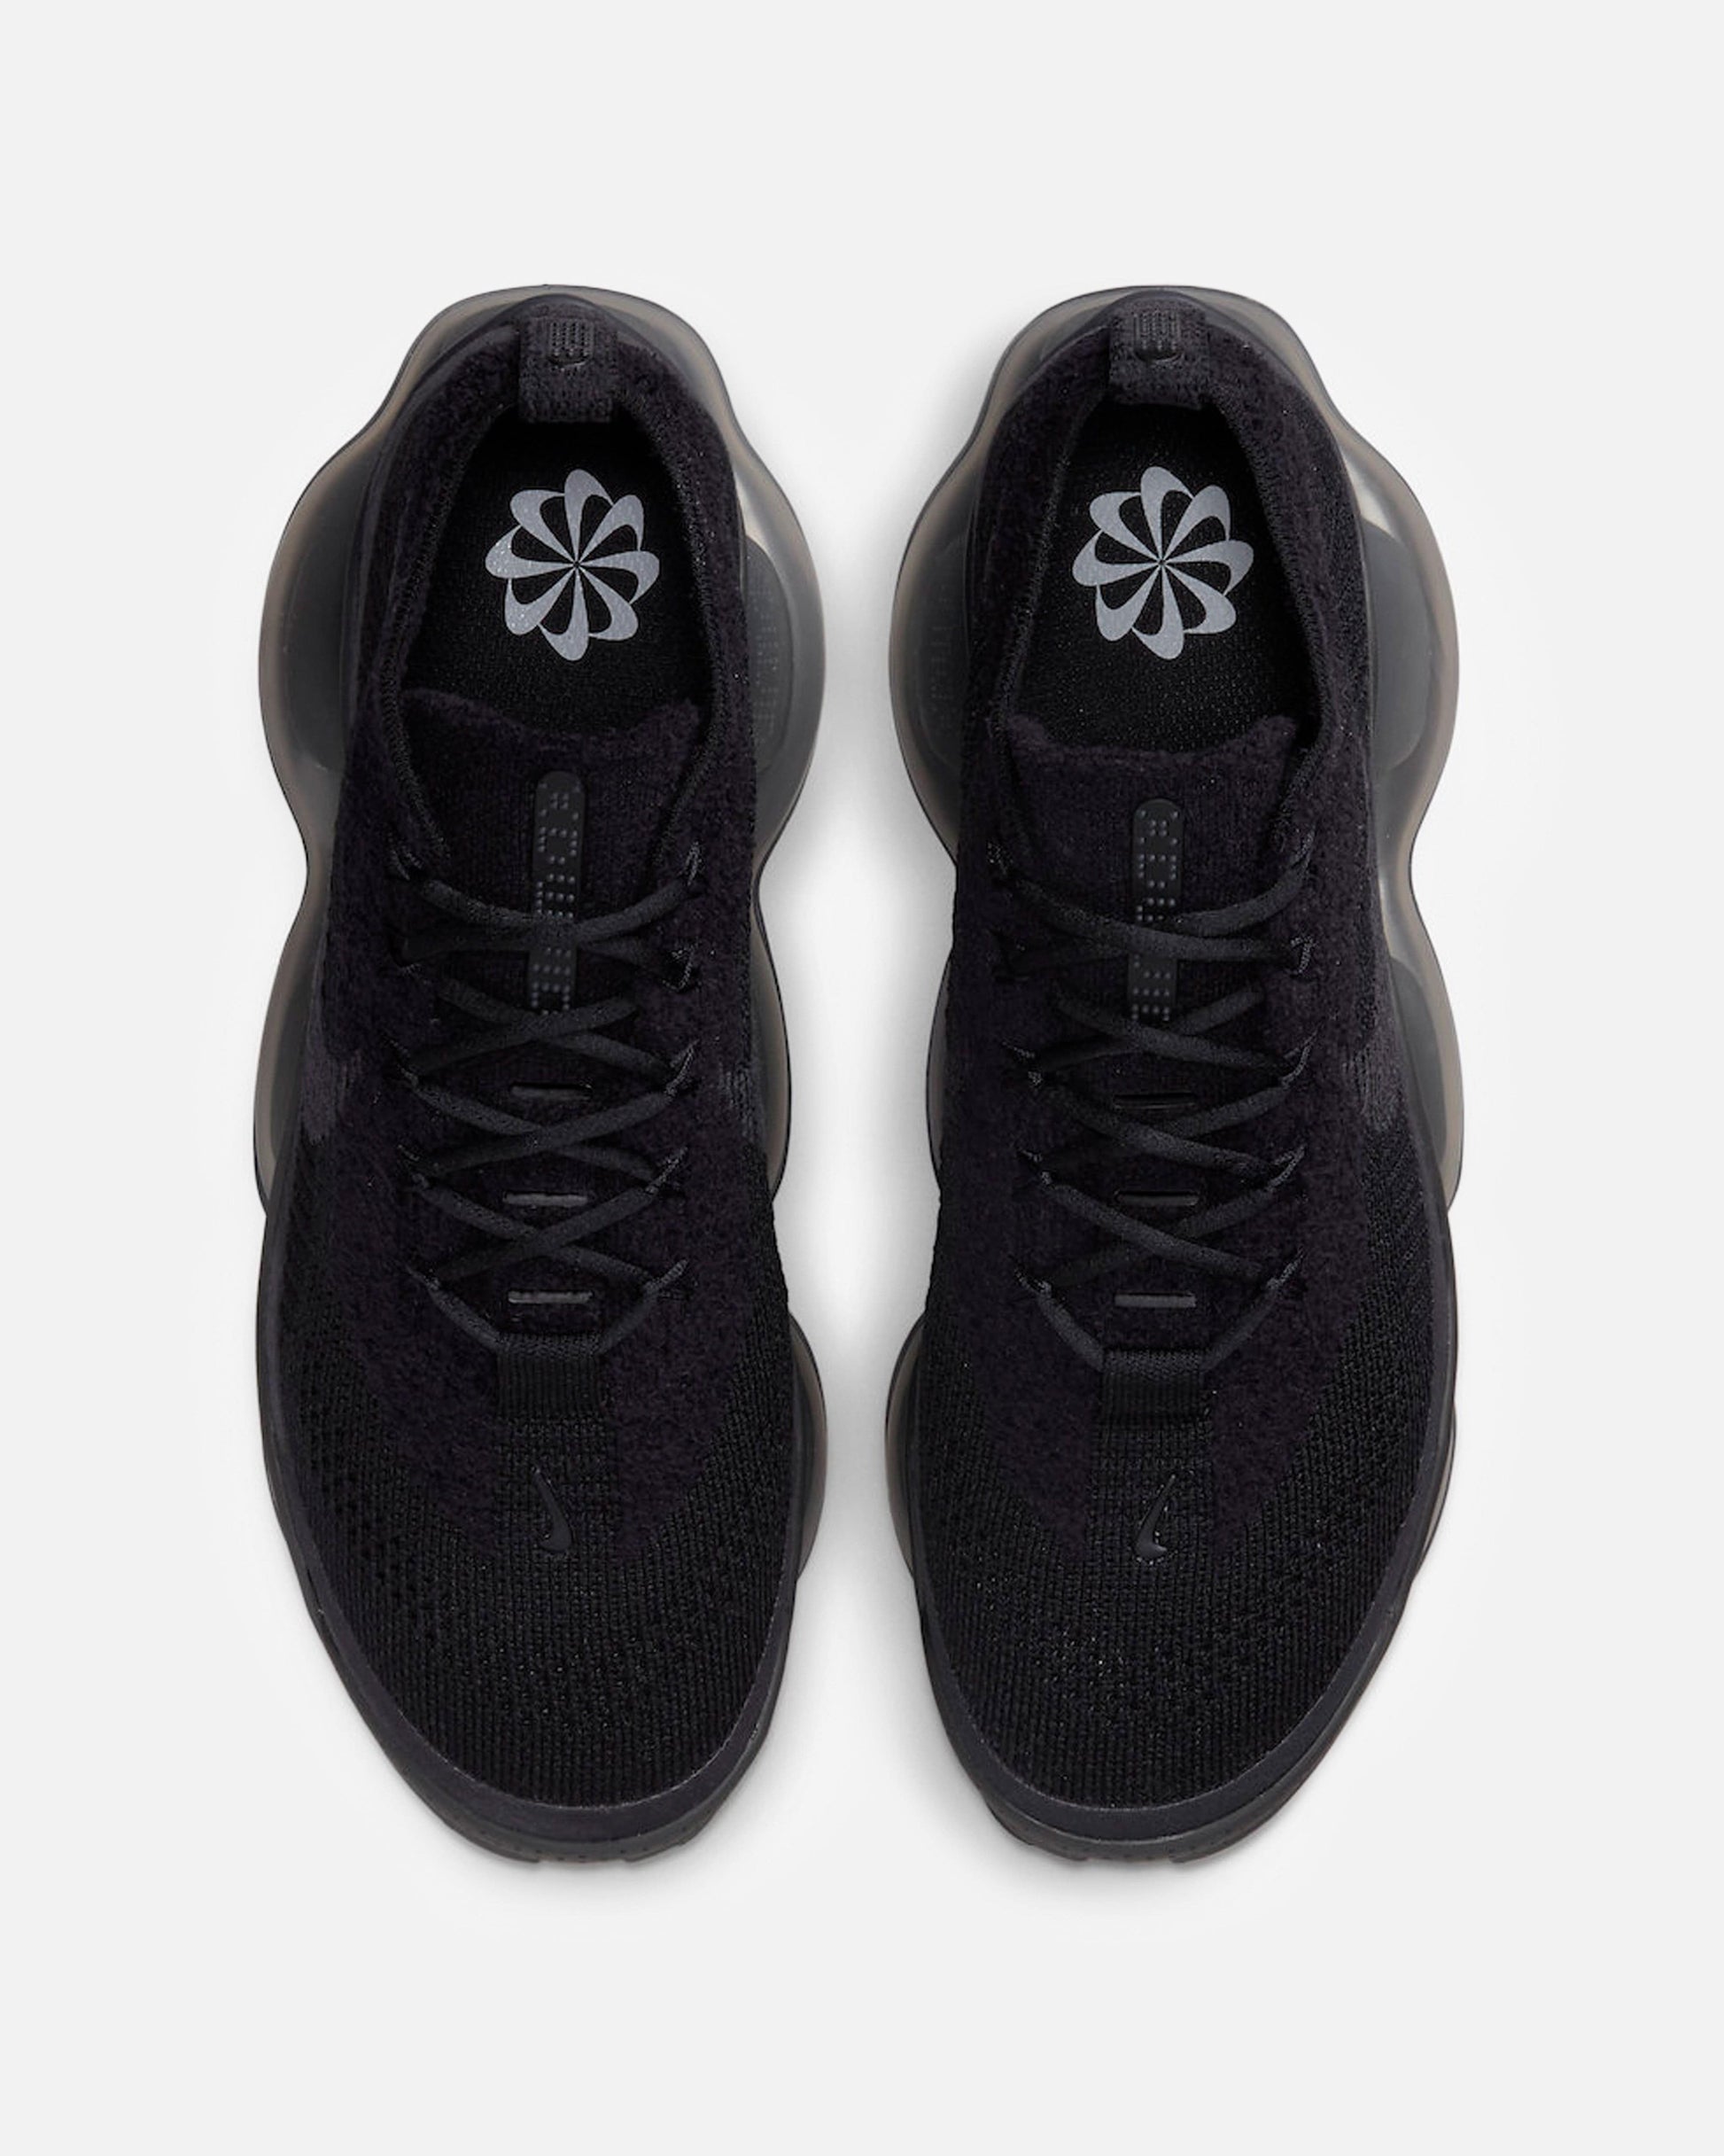 Nike Men's Sneakers Air Max Scorpion 'Black'